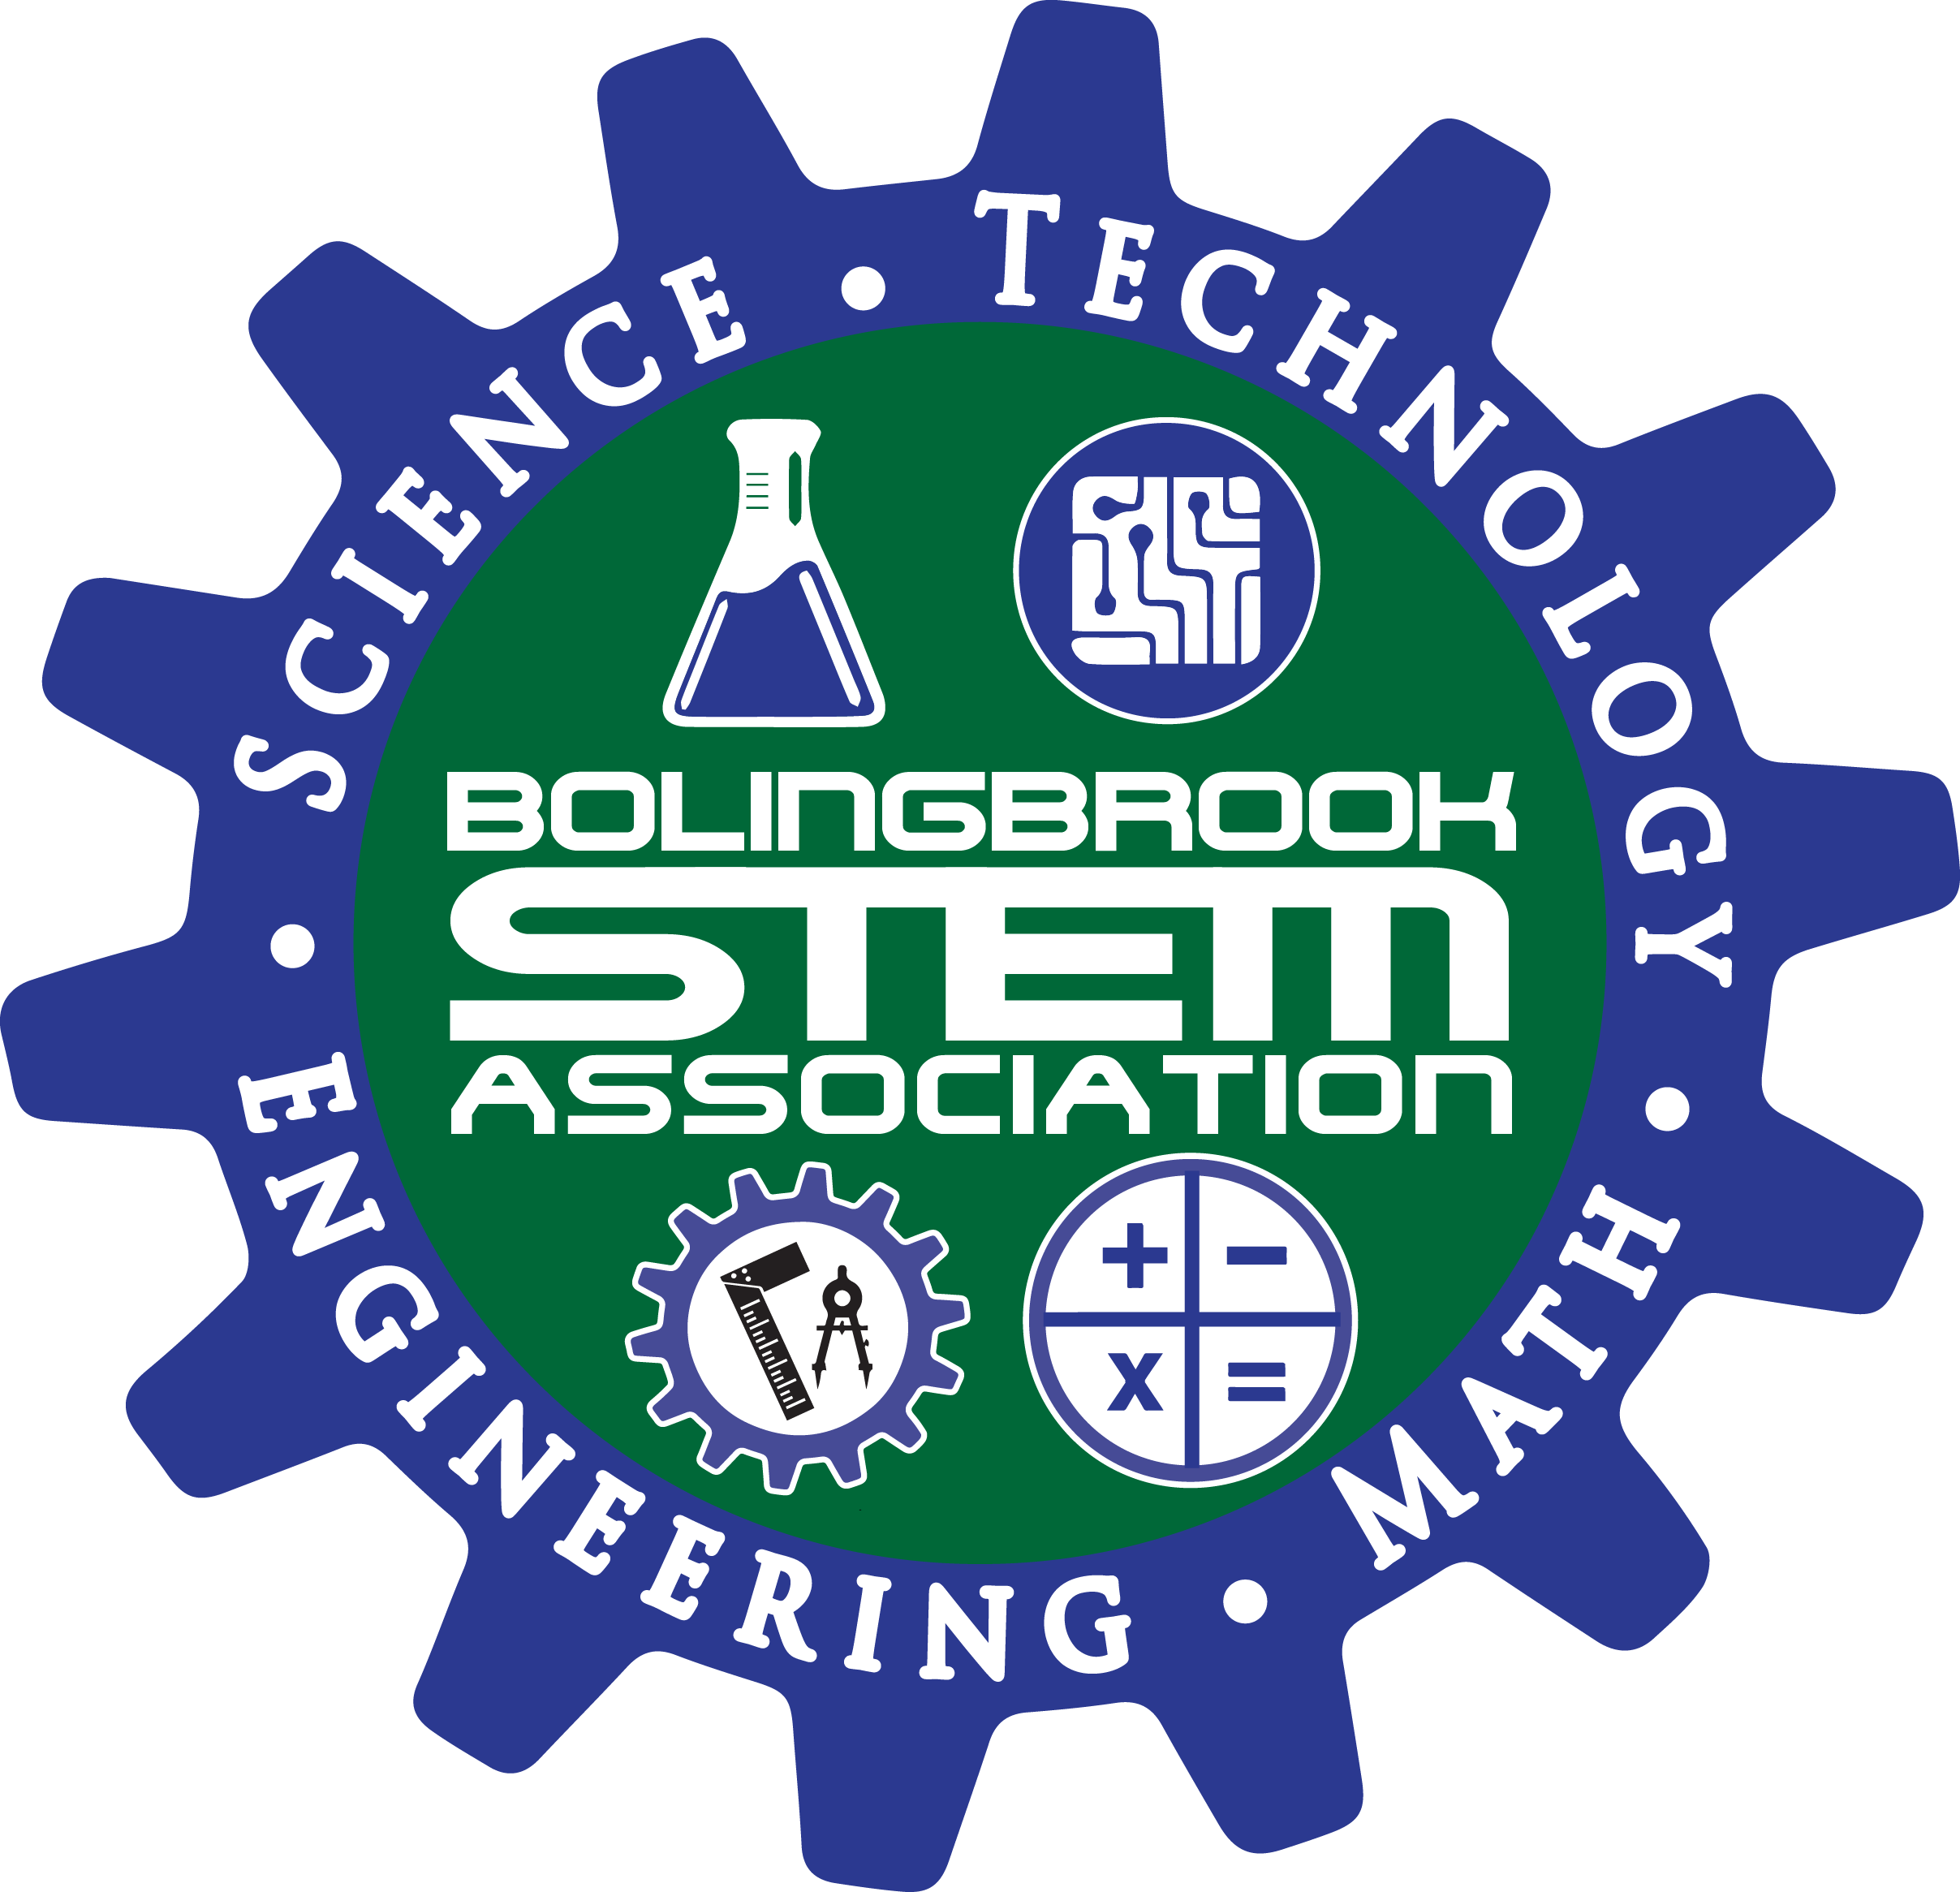 Bolingbrook STEM Association